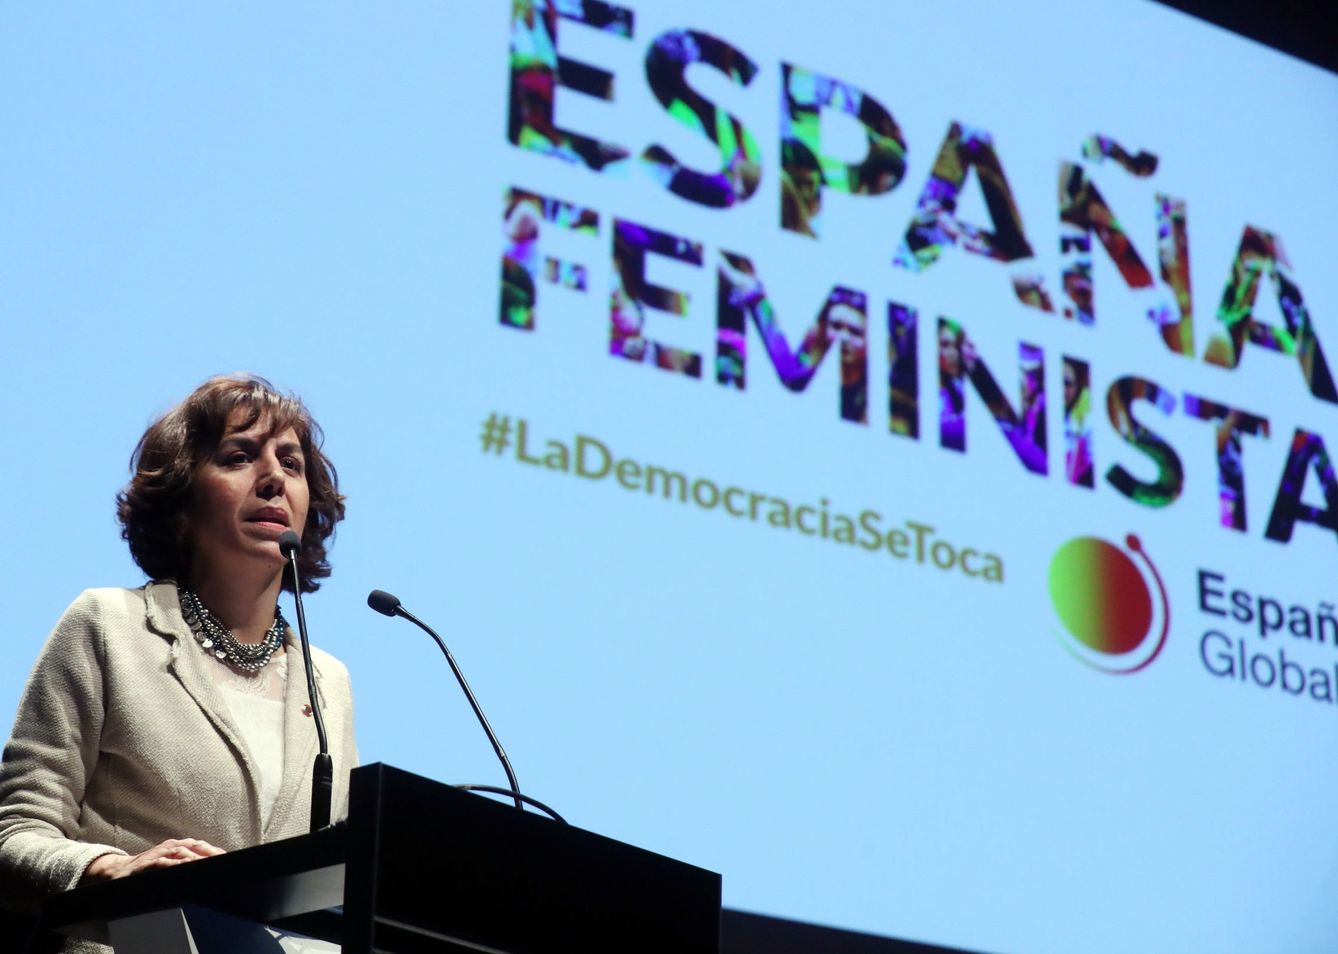  La exsecretaria de Estado de la España Global, Irene Lozano, en la presentación en 2019 de la campaña 'España feminista'. (EFE/Kiko Huesca)